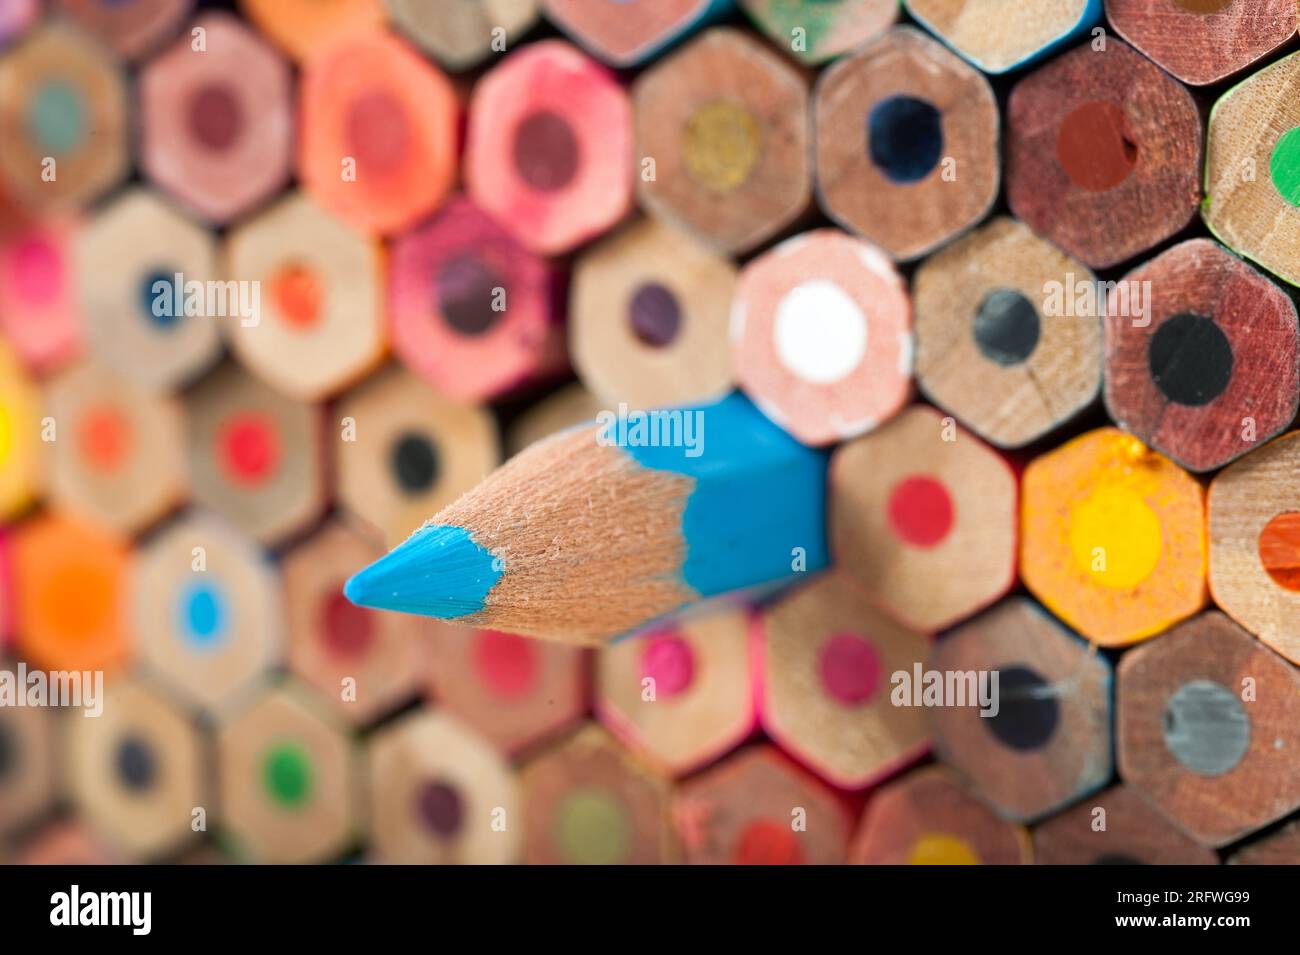 Farbige Bleistifte sind unverzichtbare Bildungs- und Spielwerkzeuge für Kinder und Schüler sowie Schreib-, Zeichn- und Lernmaterialien, die von verwendet werden Stockfoto